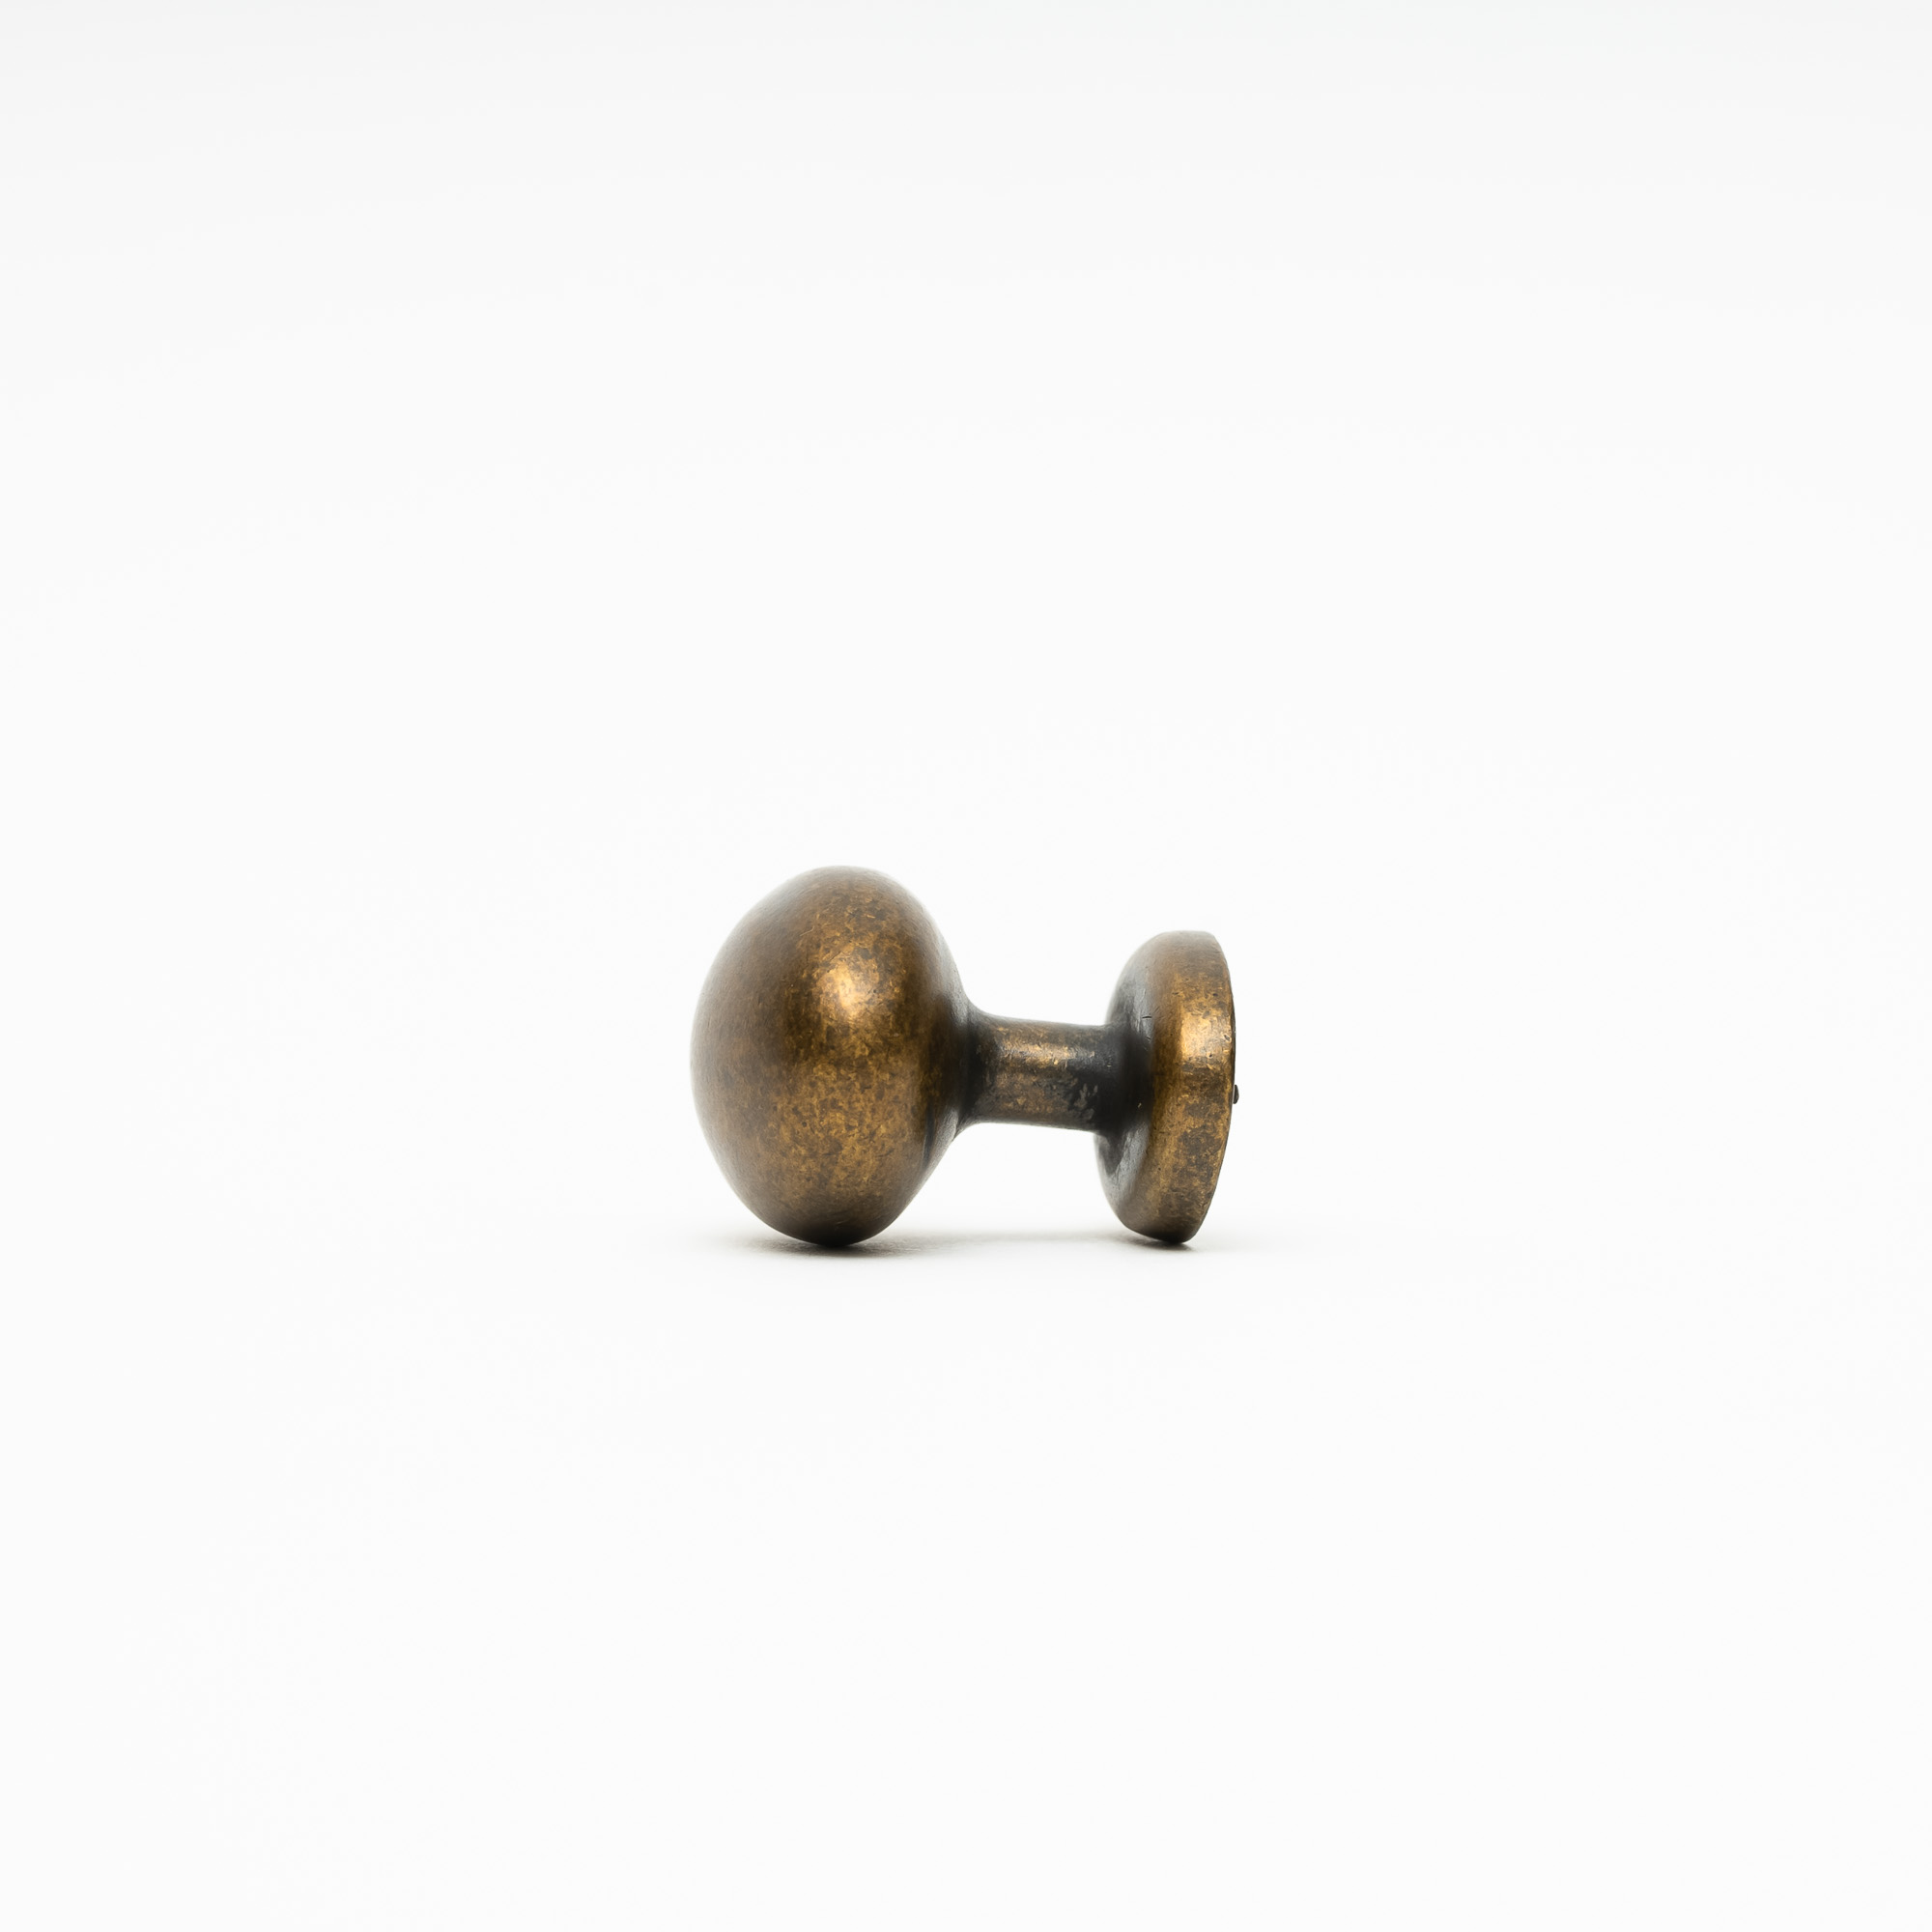 Oval door knob in oxide - Tornett